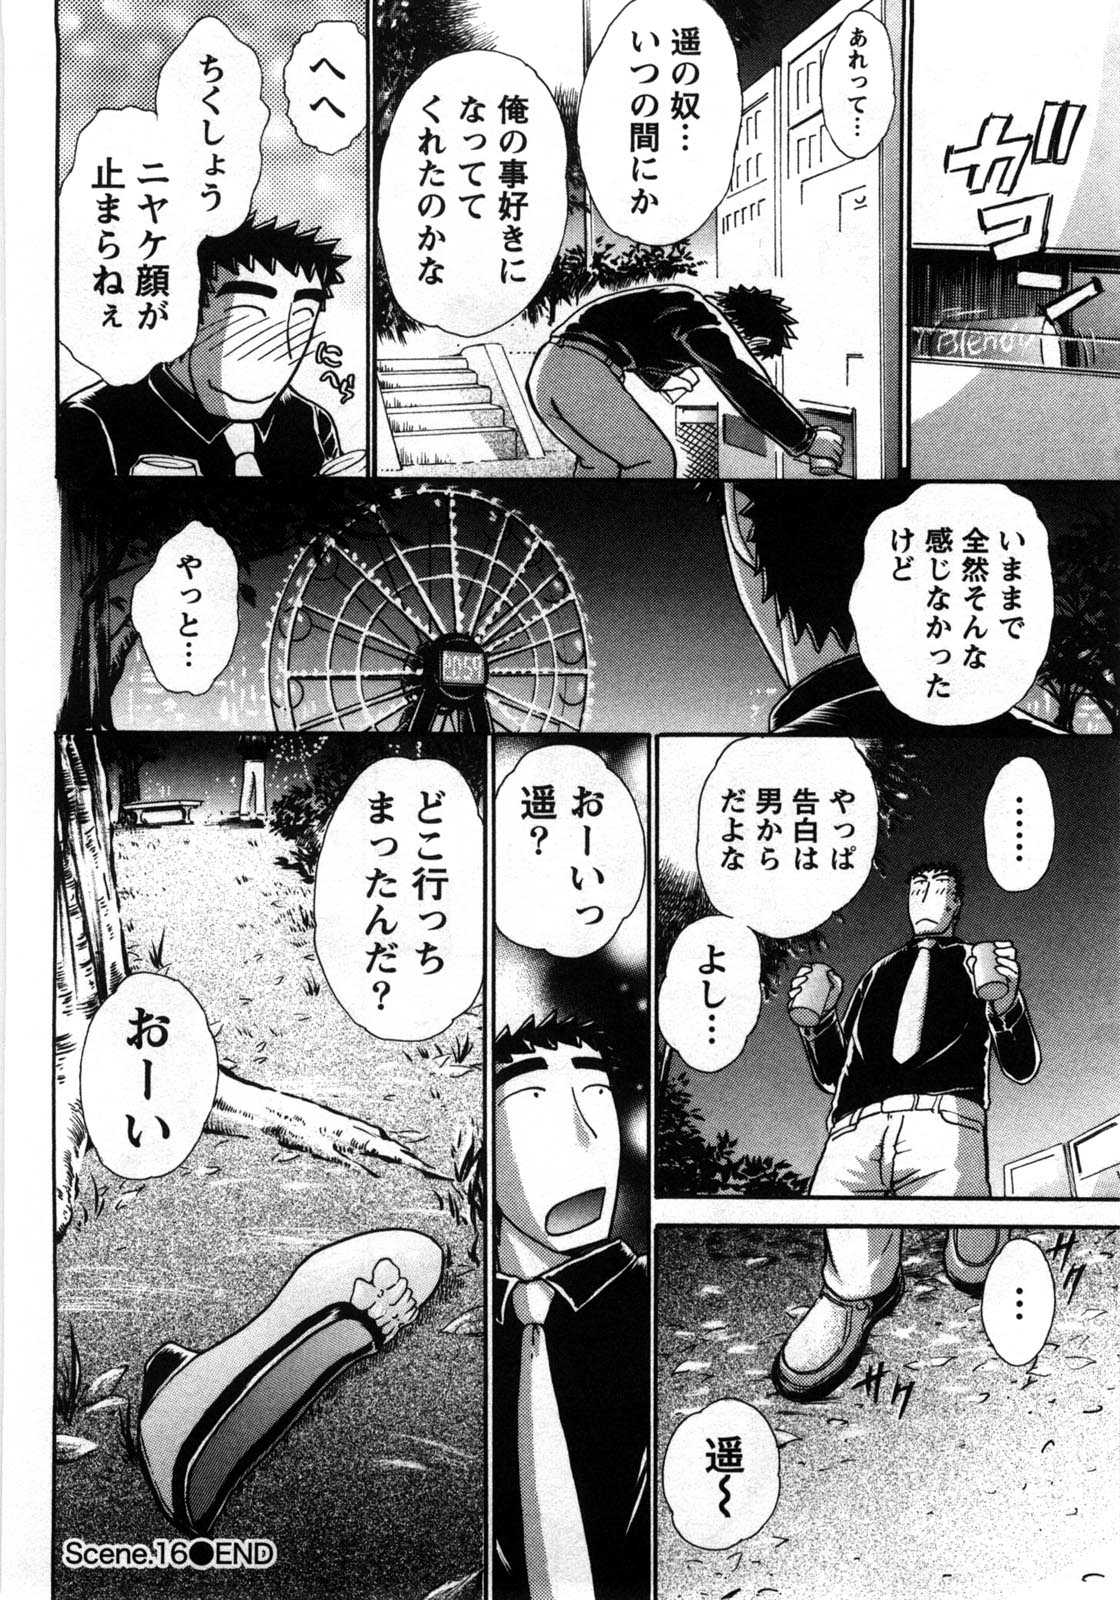 [Ayasaka Mitsune] Compass ~Ojousama to Namegoto wo~ Vol.2 [綾坂みつね] コンパス ~お嬢様と舐めゴトを♥~ 下巻 [11-04-09]